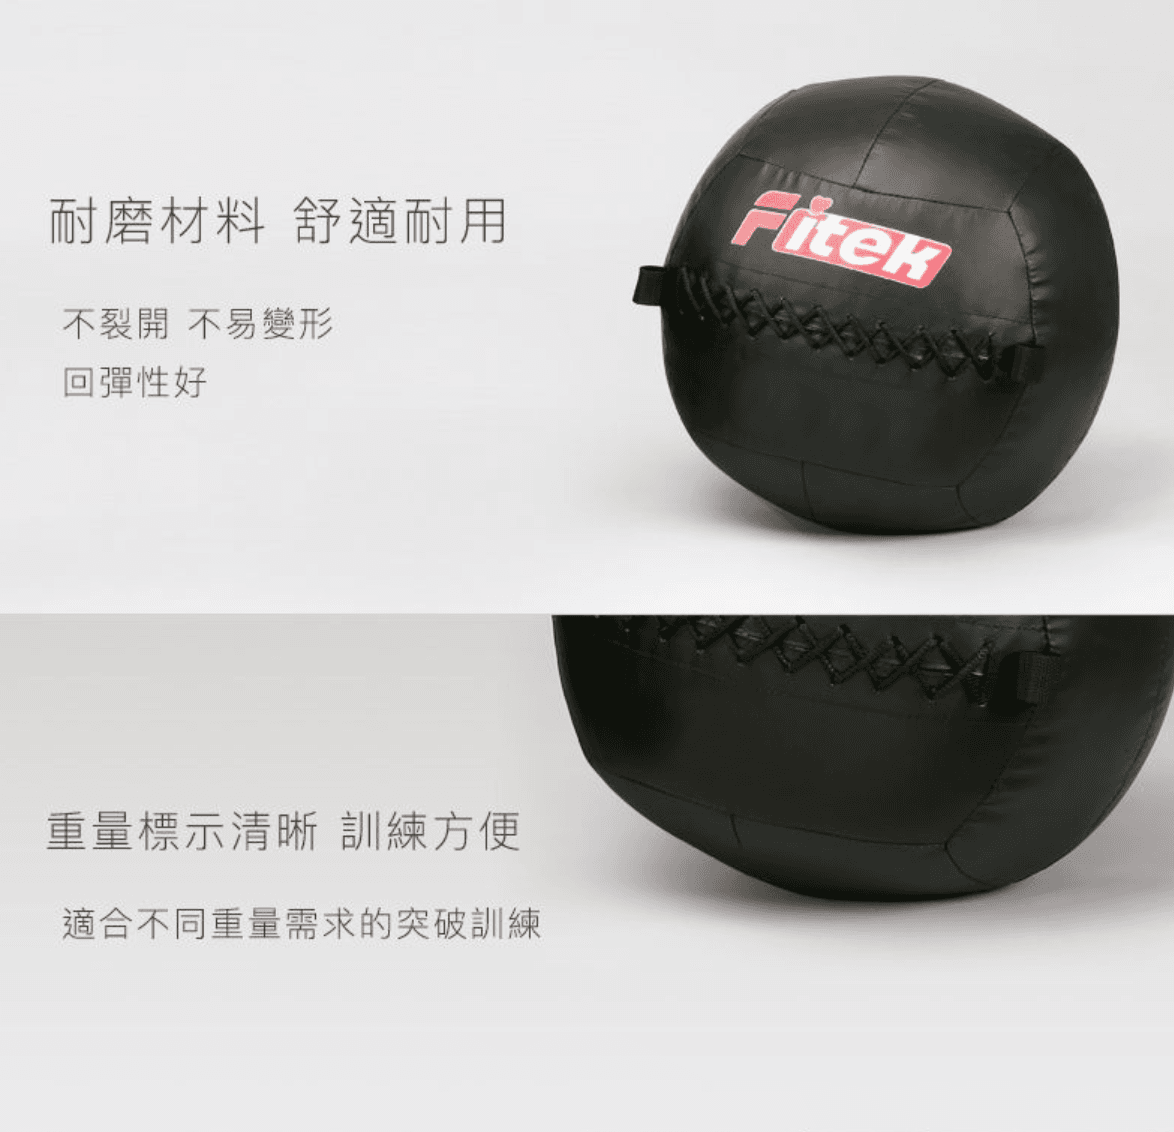 軟式藥球牆球5KG【Fitek】 3